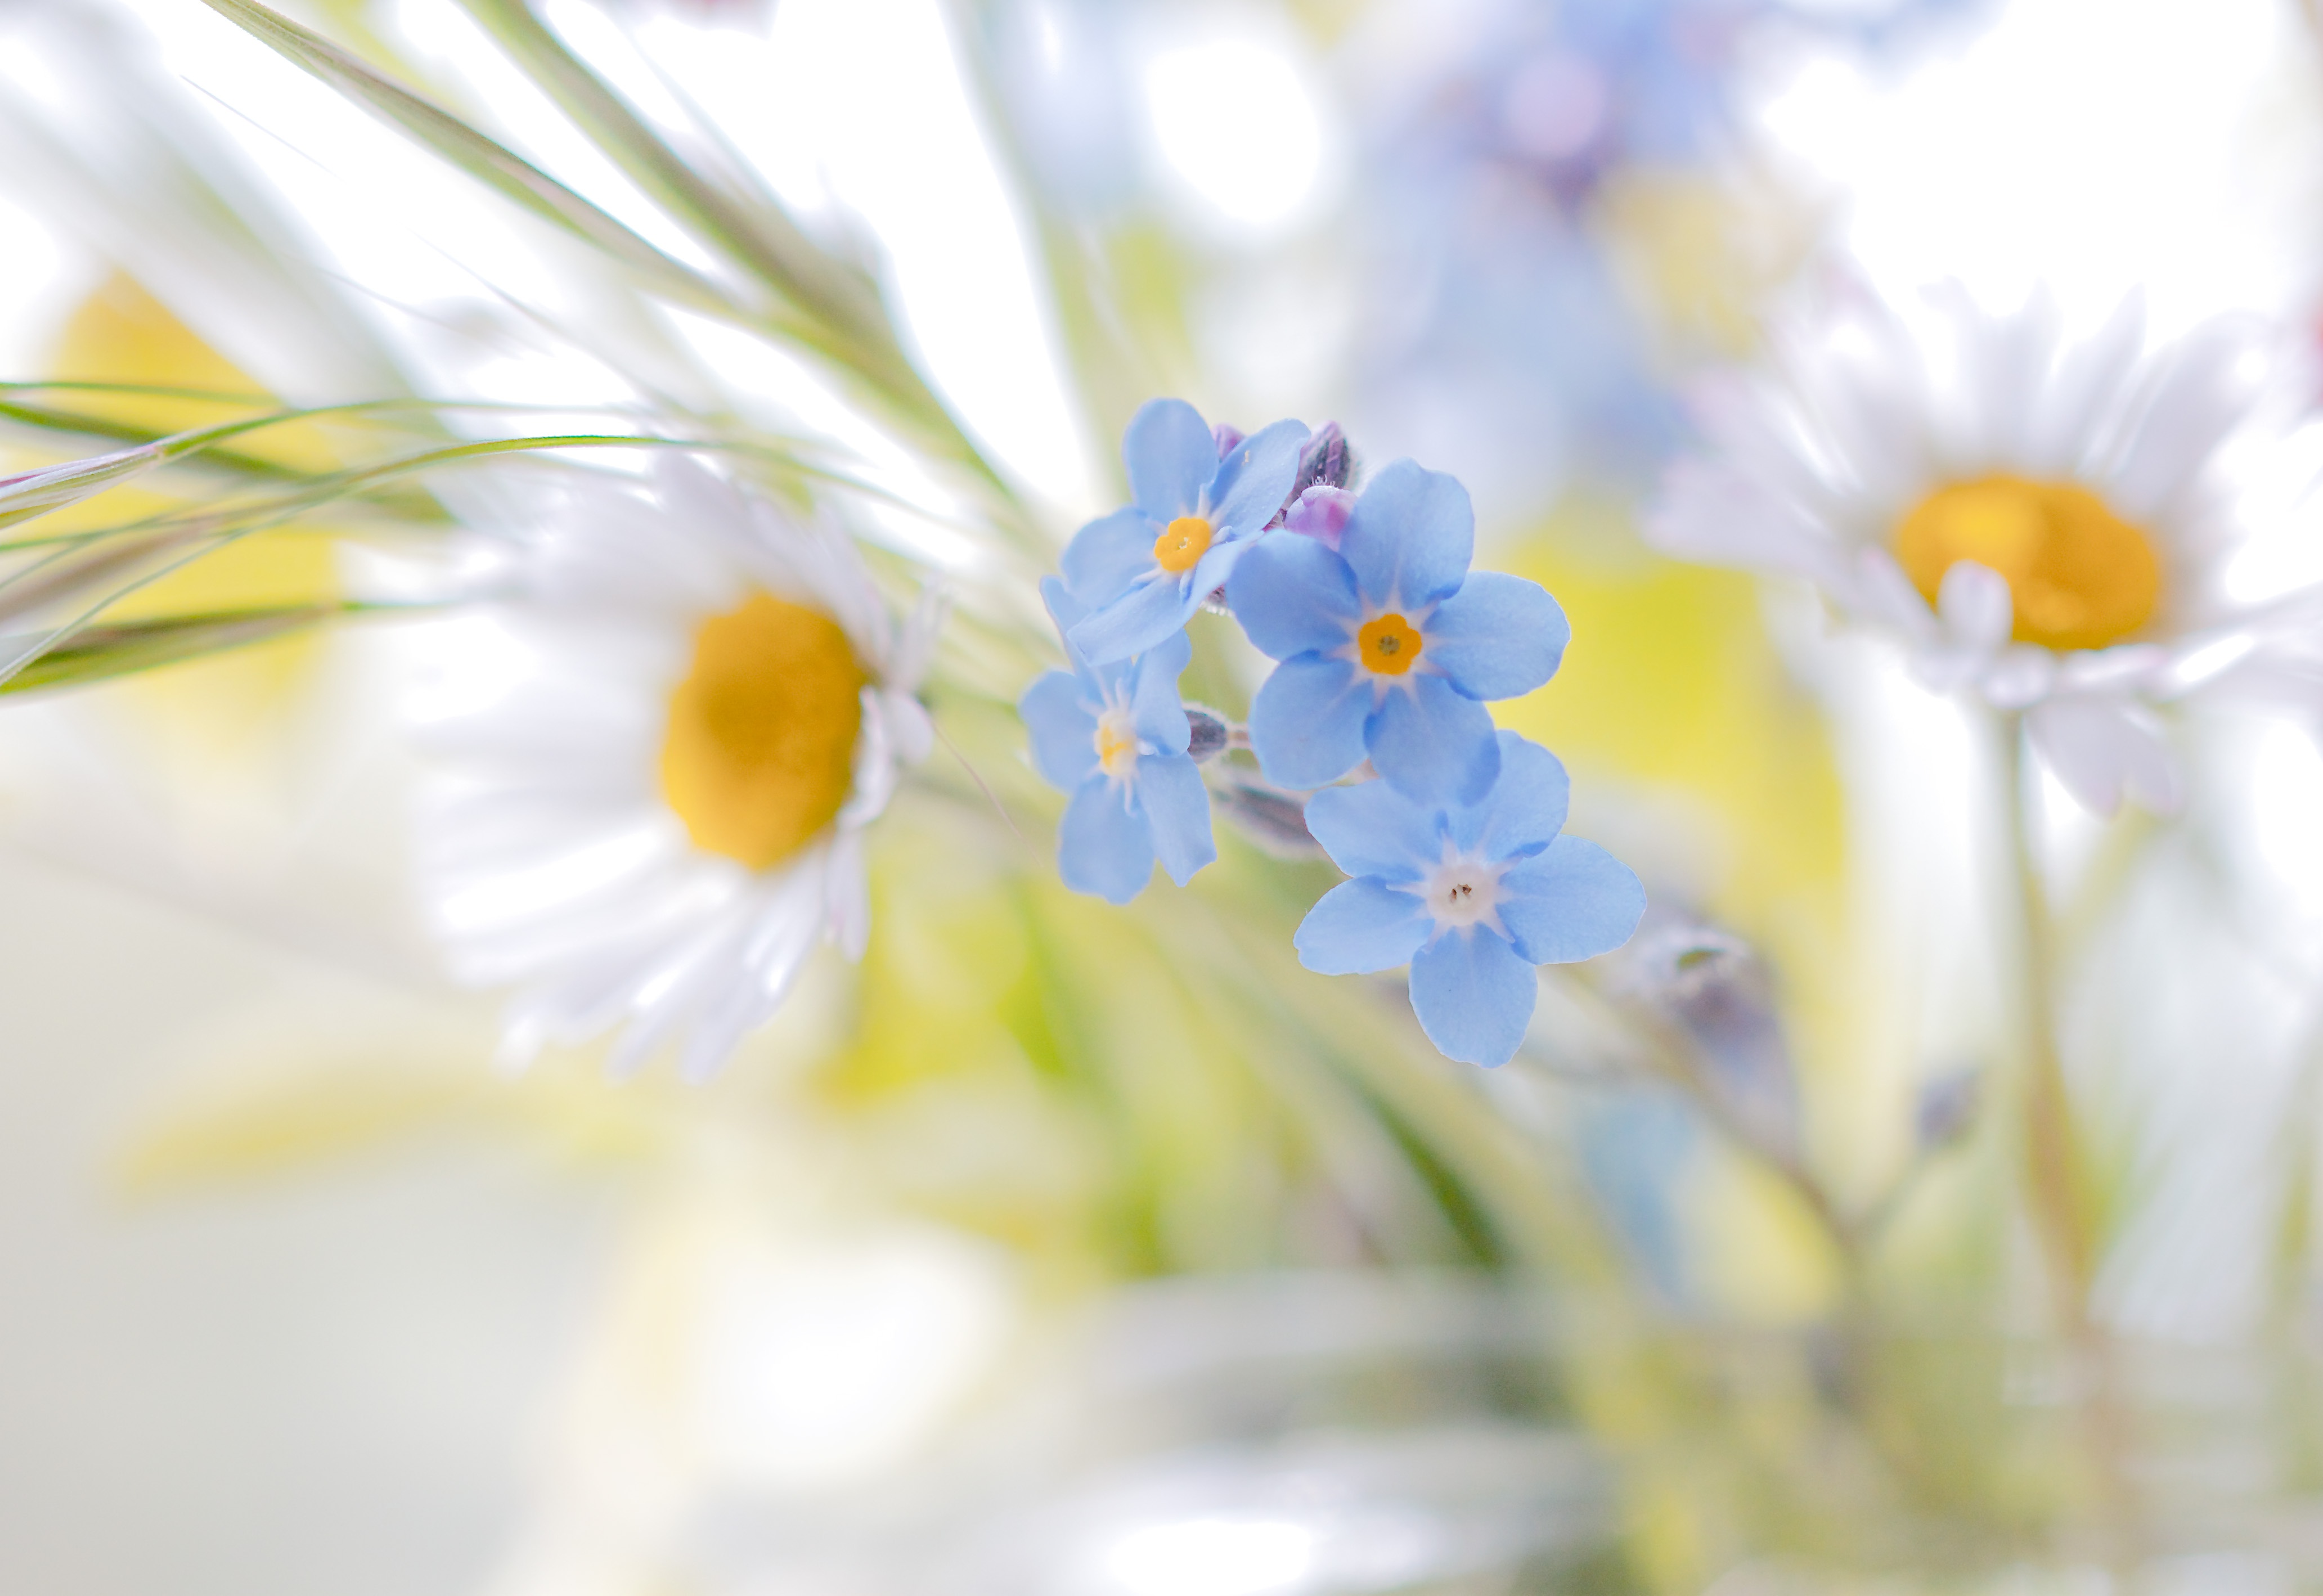 Flower White Flower Daisy Blue Flower Forget Me Not 4129x2837